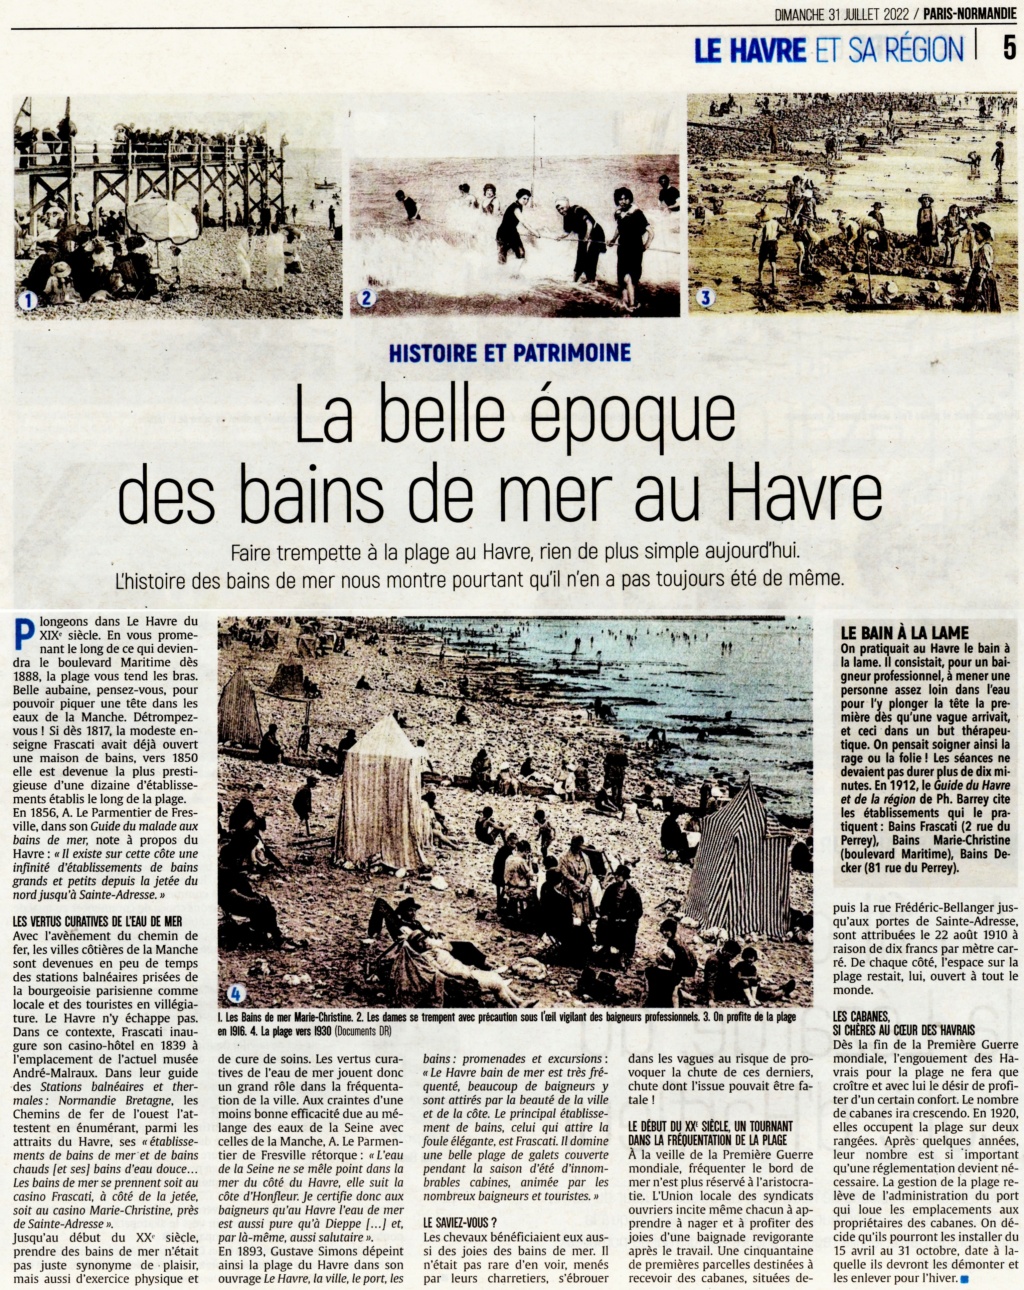 La belle époque des bains de mer au Havre 2022-096